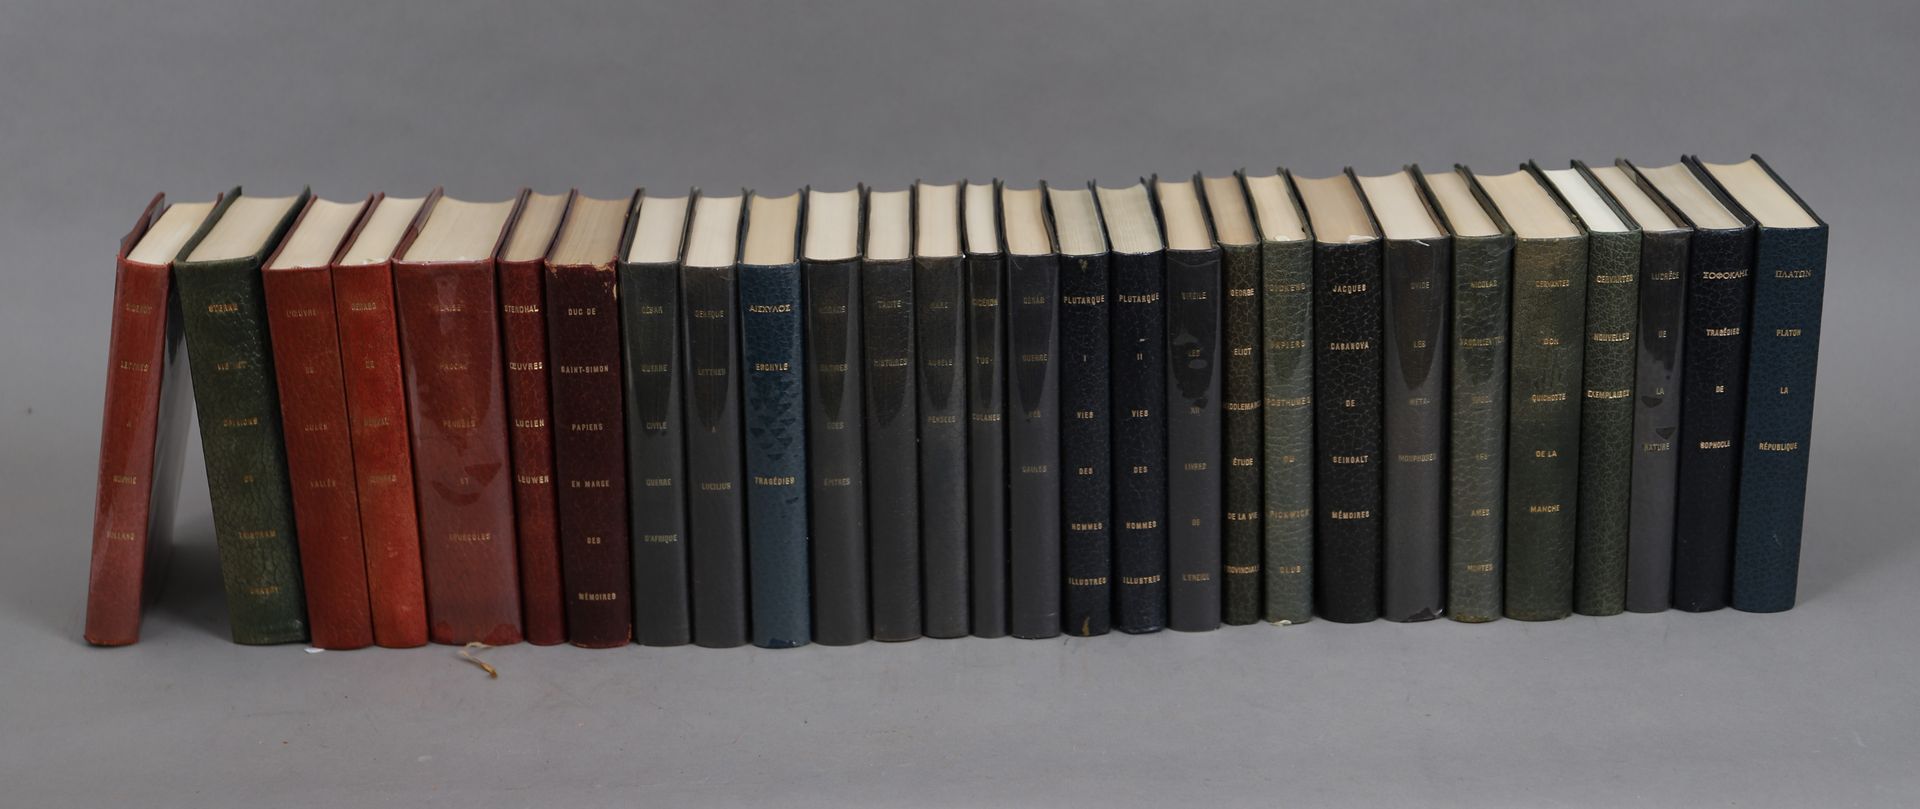 Null CLASSIQUES de la LITTERATURE

LOT de 28 volumes reliés. 

1965.